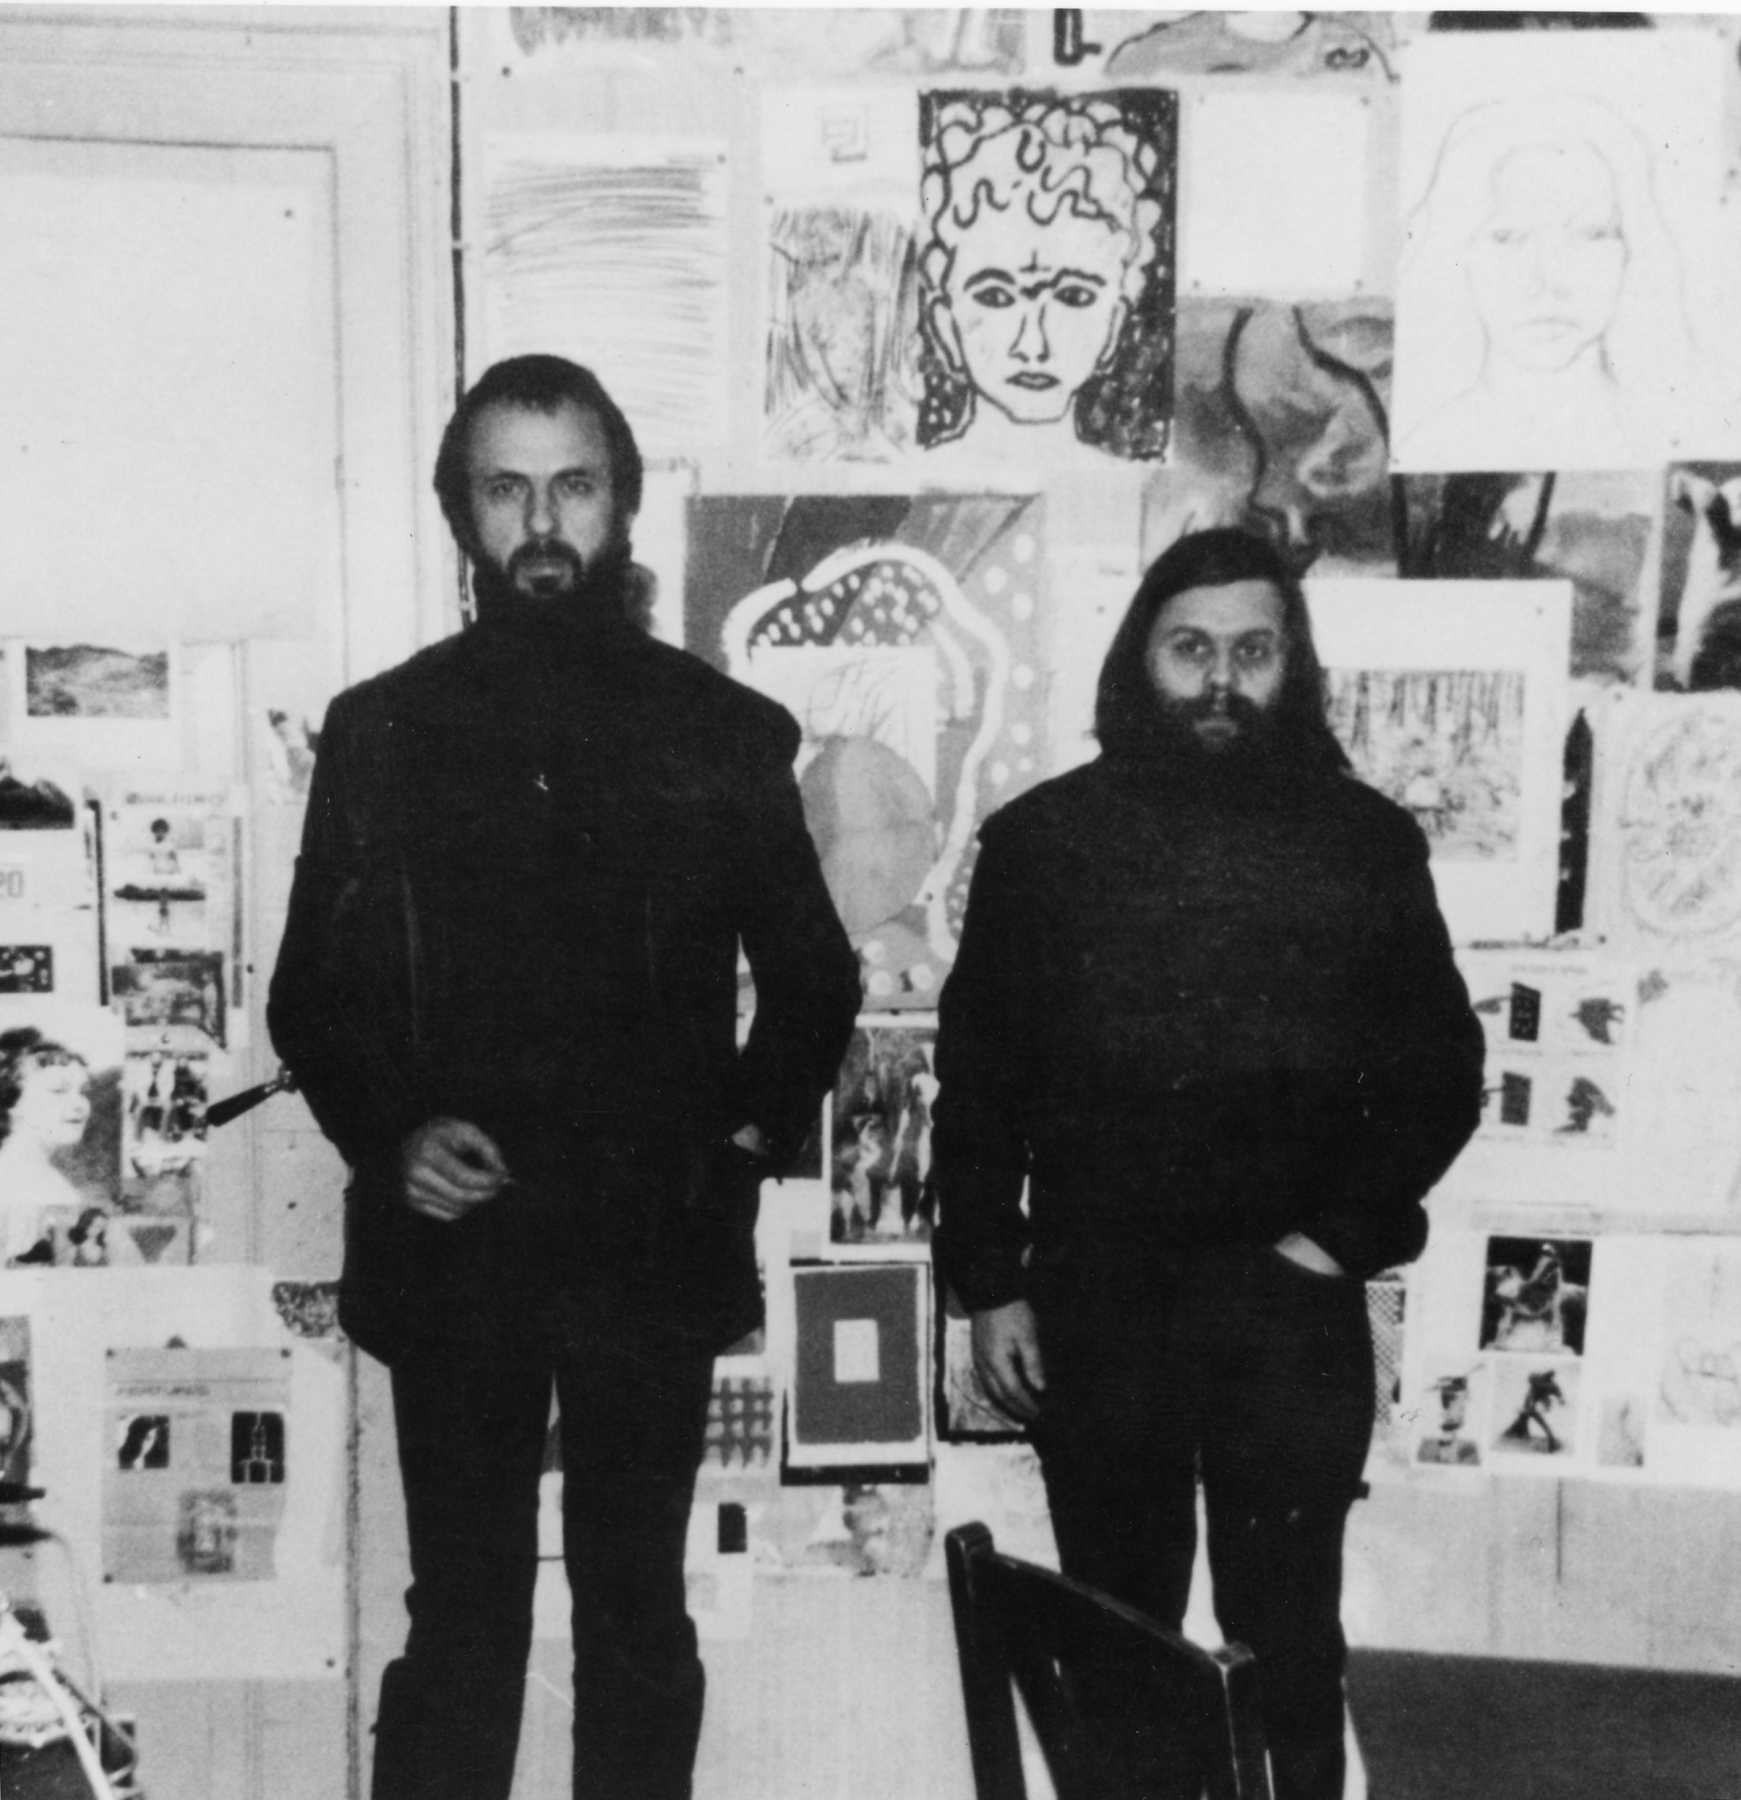 J&ouml;rg Immendorff and A.R. Penck